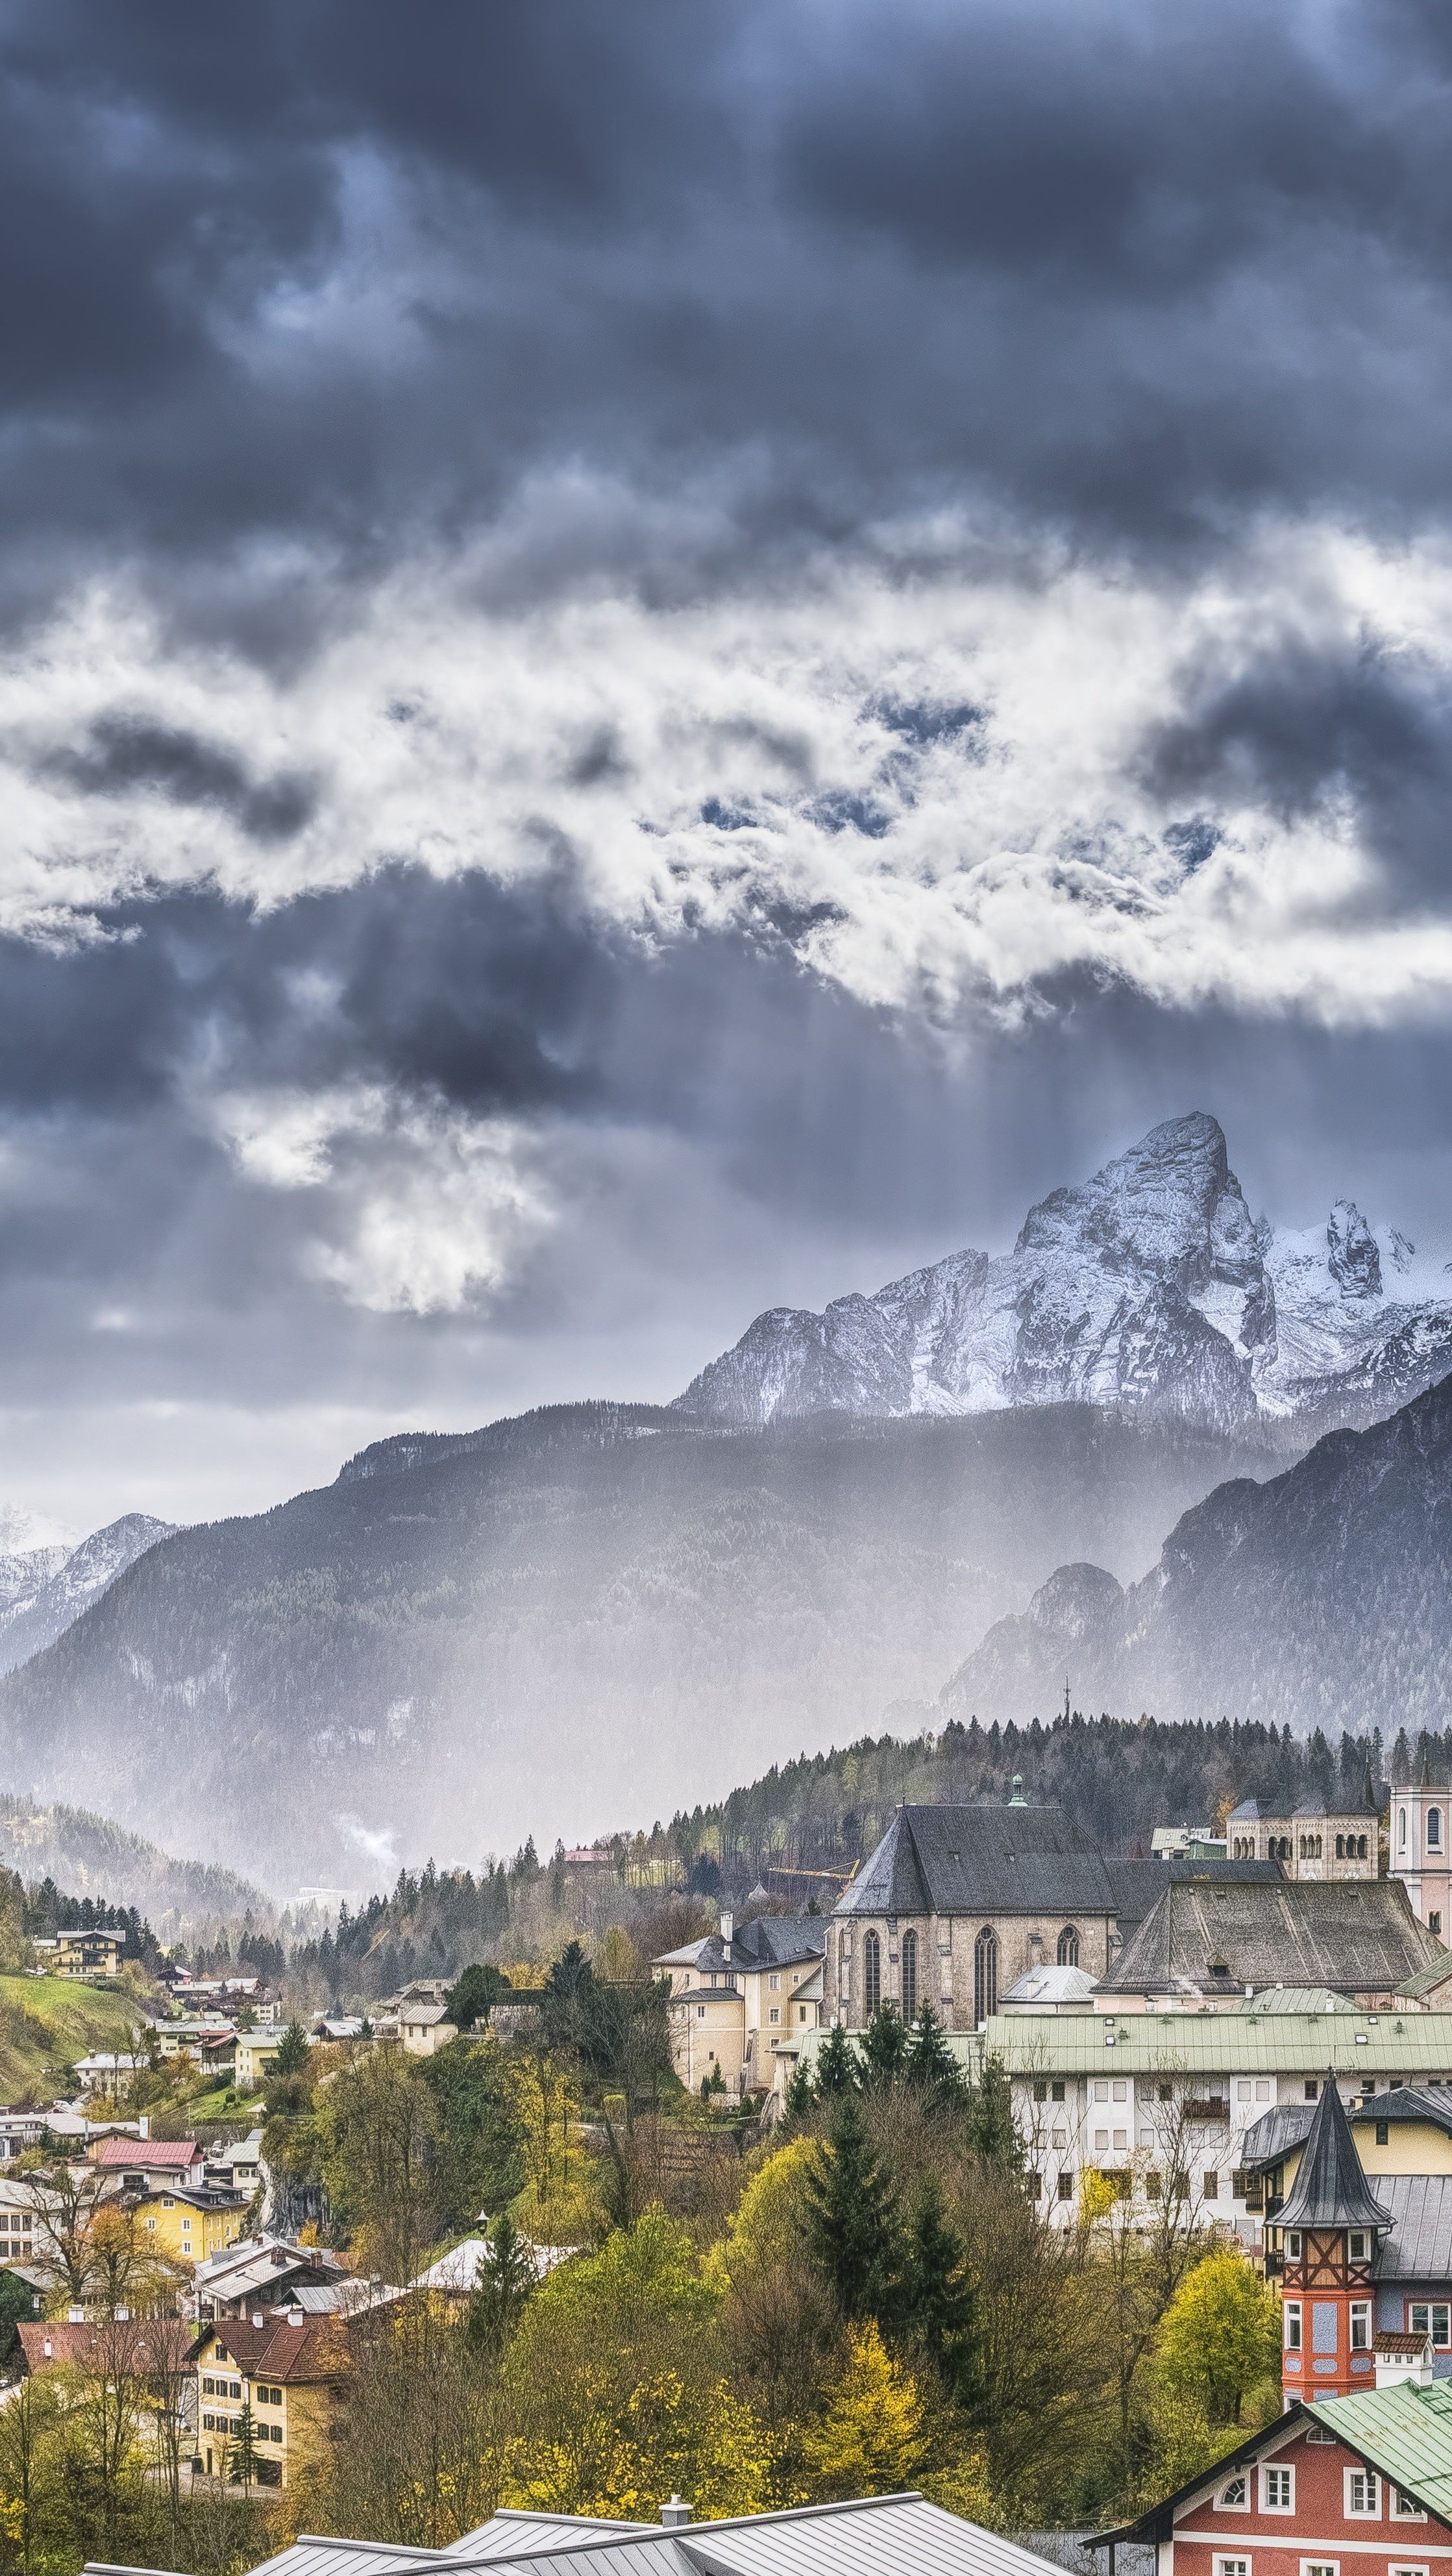  Schweiz Hintergrundbild 2237x3969. Kostenlose Hintergrundbilder Schweiz, Gmund am Tegernsee, Cloud, Atmosphäre, Naturlandschaft, Bilder Für Ihren Desktop Und Fotos